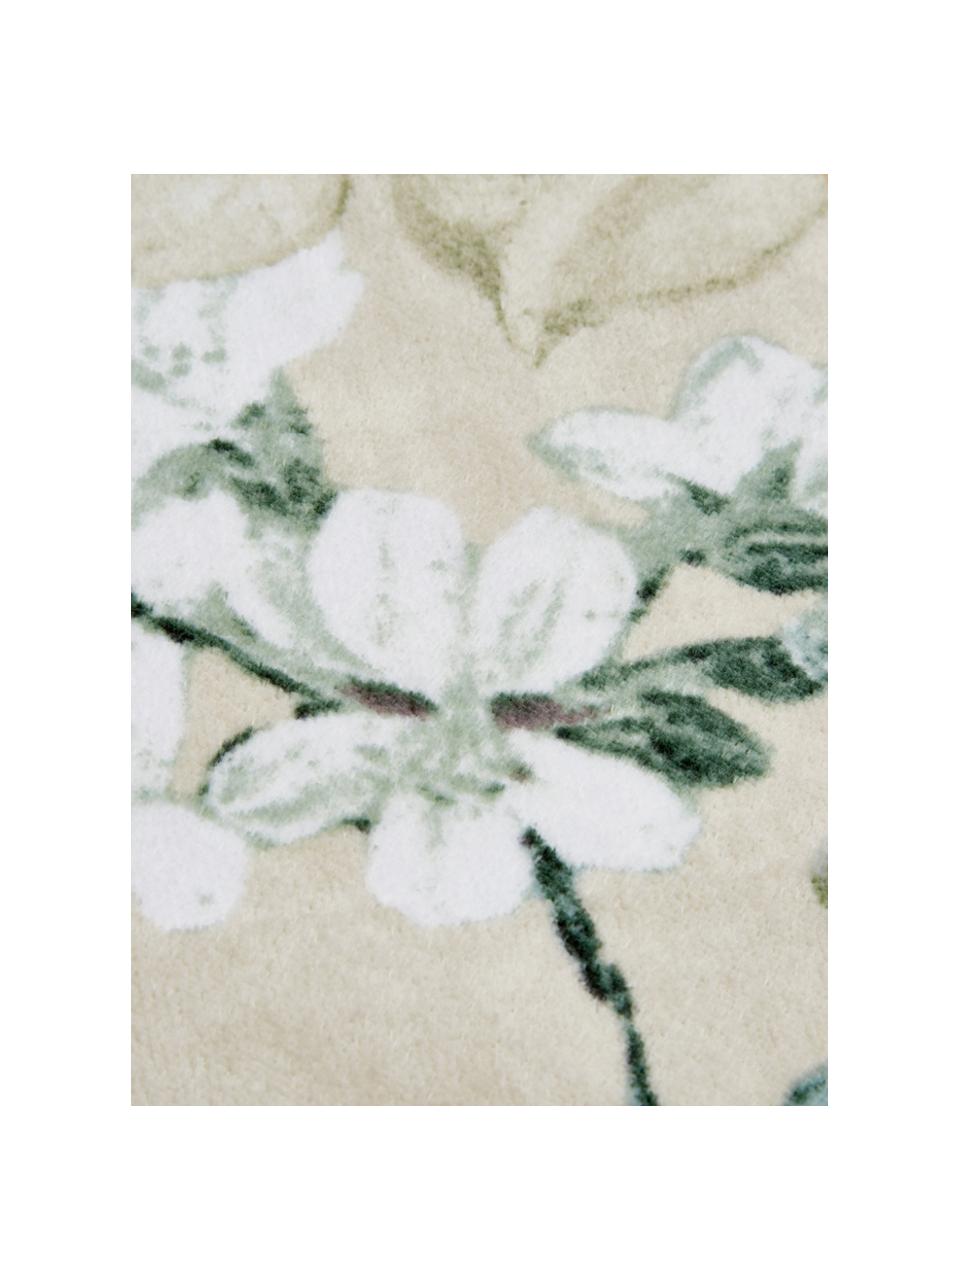 Handdoek Rosalee in verschillende formaten, met bloemenpatroon, 100% biokatoen, GOTS-gecertificeerd, Beige, met patroon, Douchehanddoek, B 70 x L 140 cm